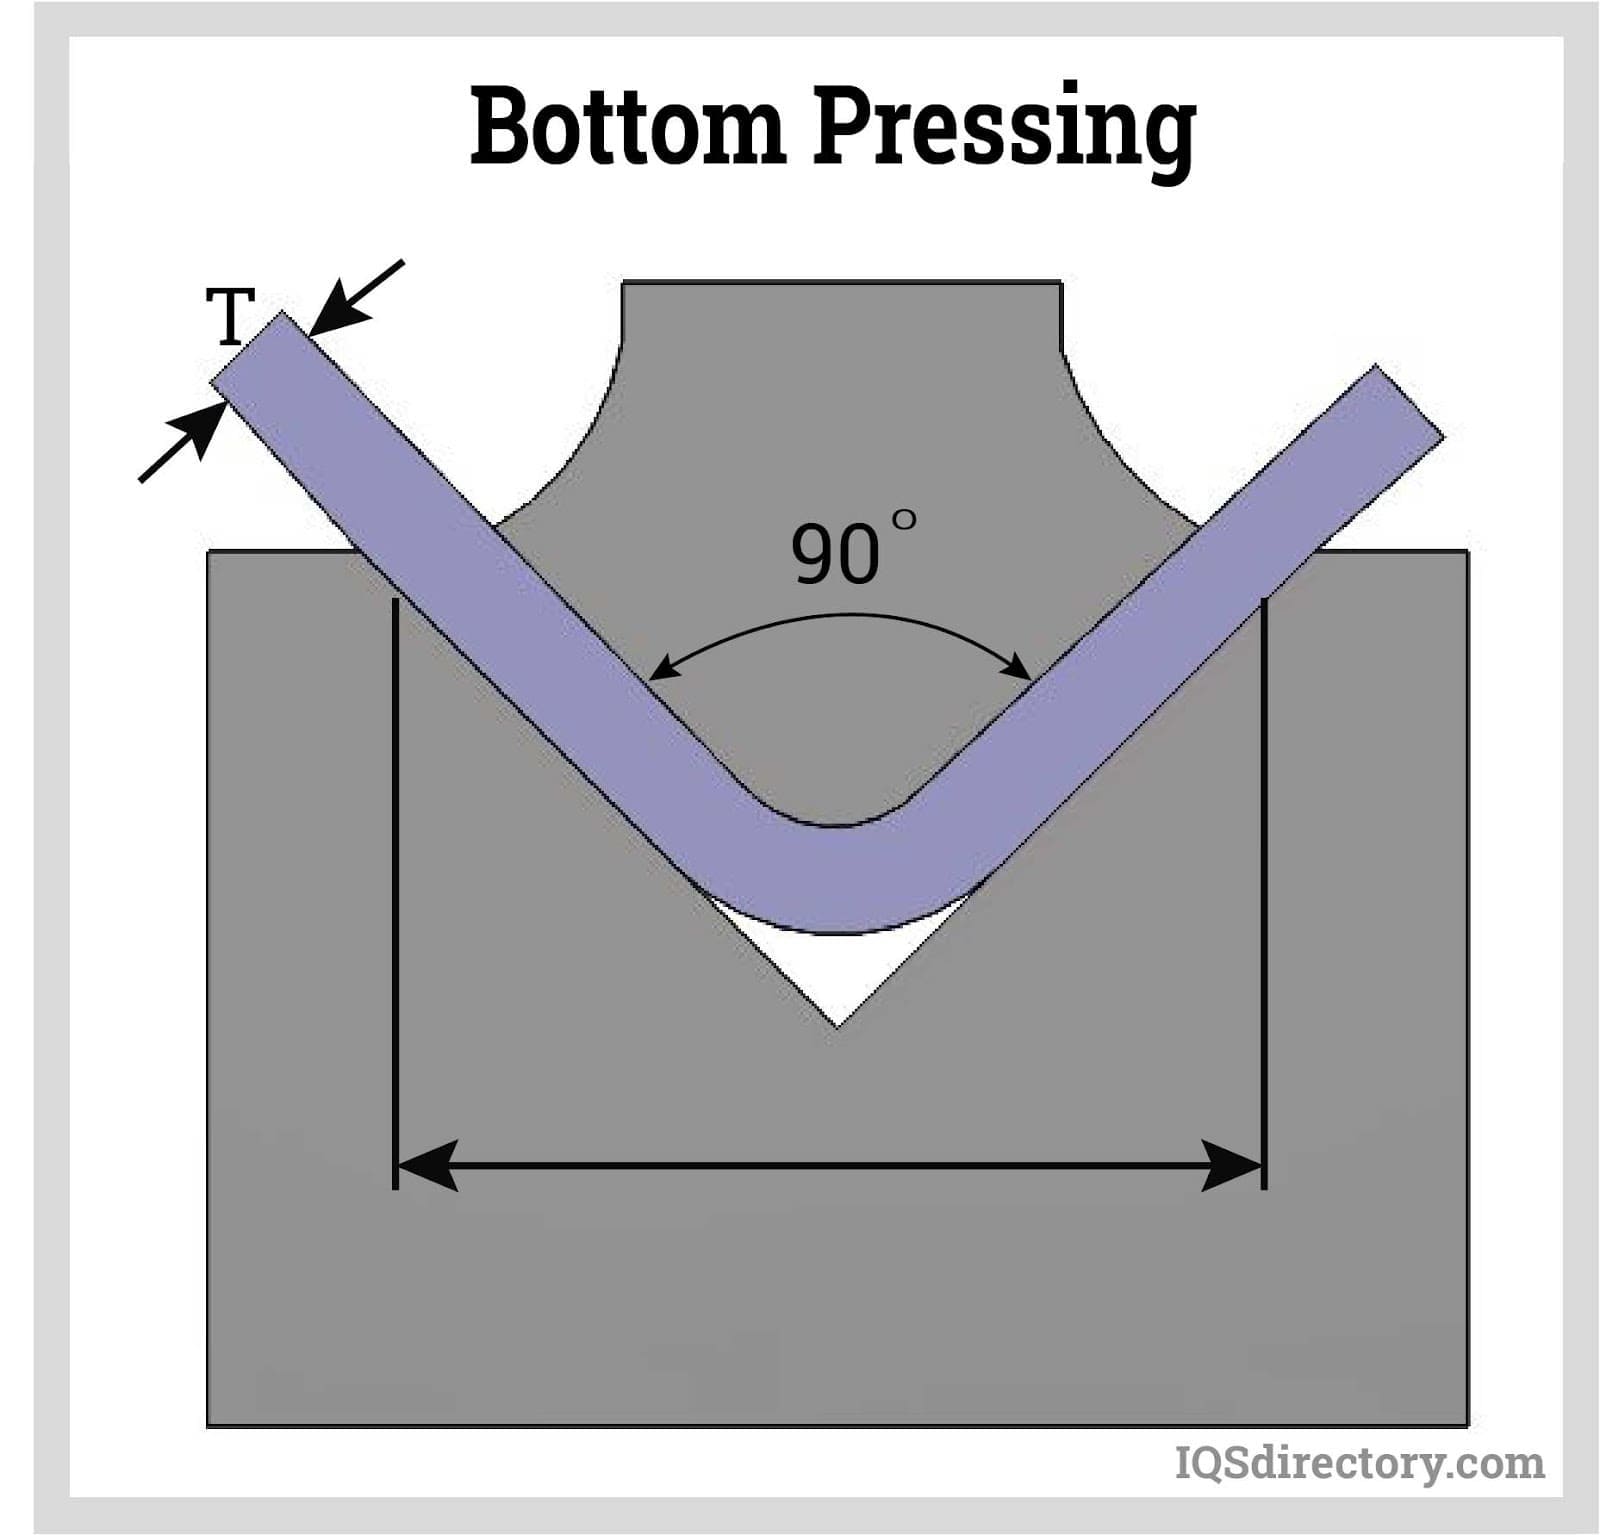 Bottom Pressing